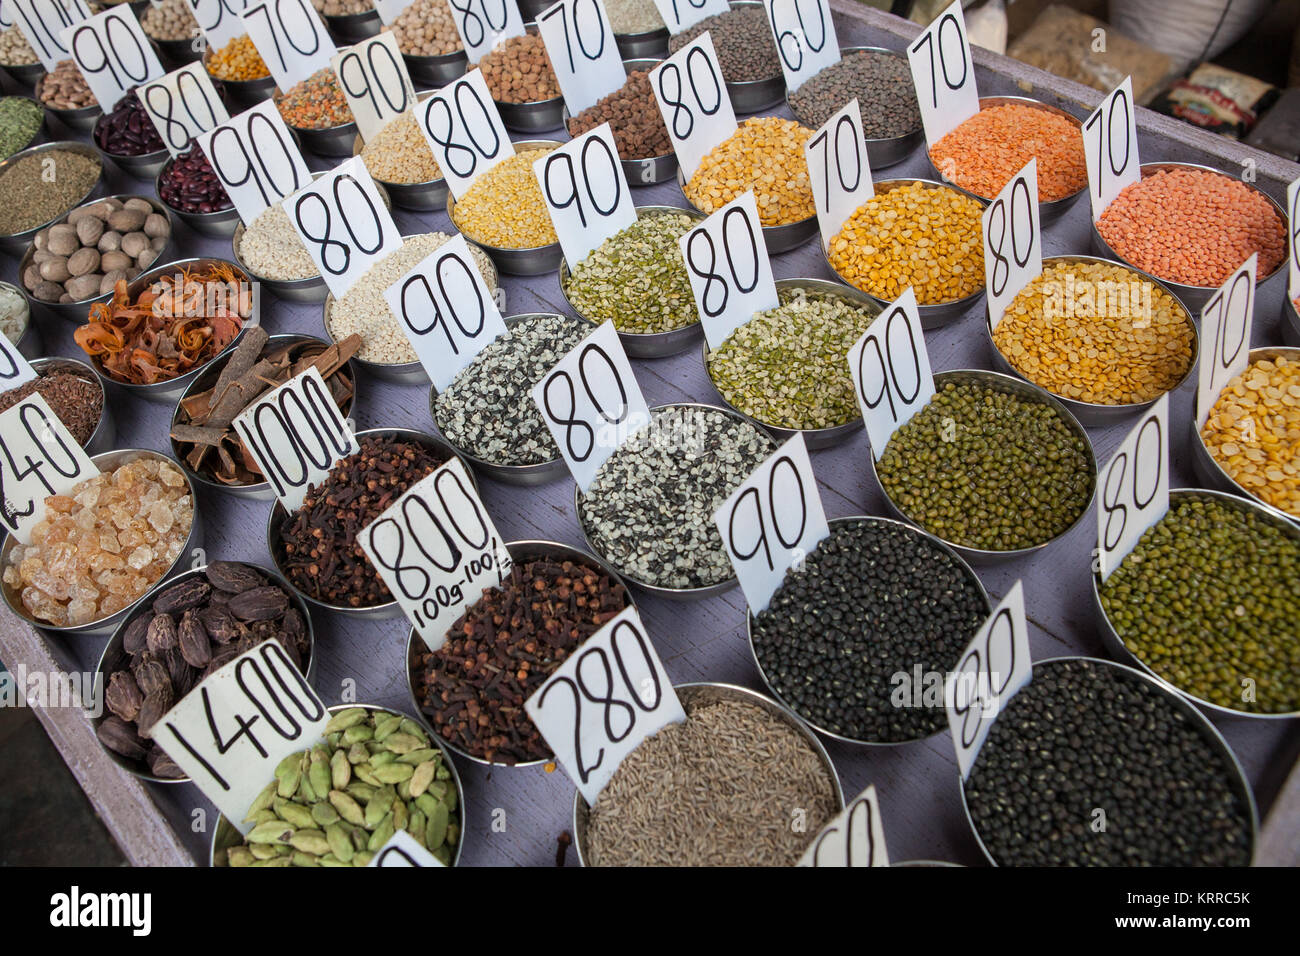 Visualizzazione di lenticchie, legumi, noci e spezie nel mercato delle spezie nella città vecchia di Delhi, India Foto Stock